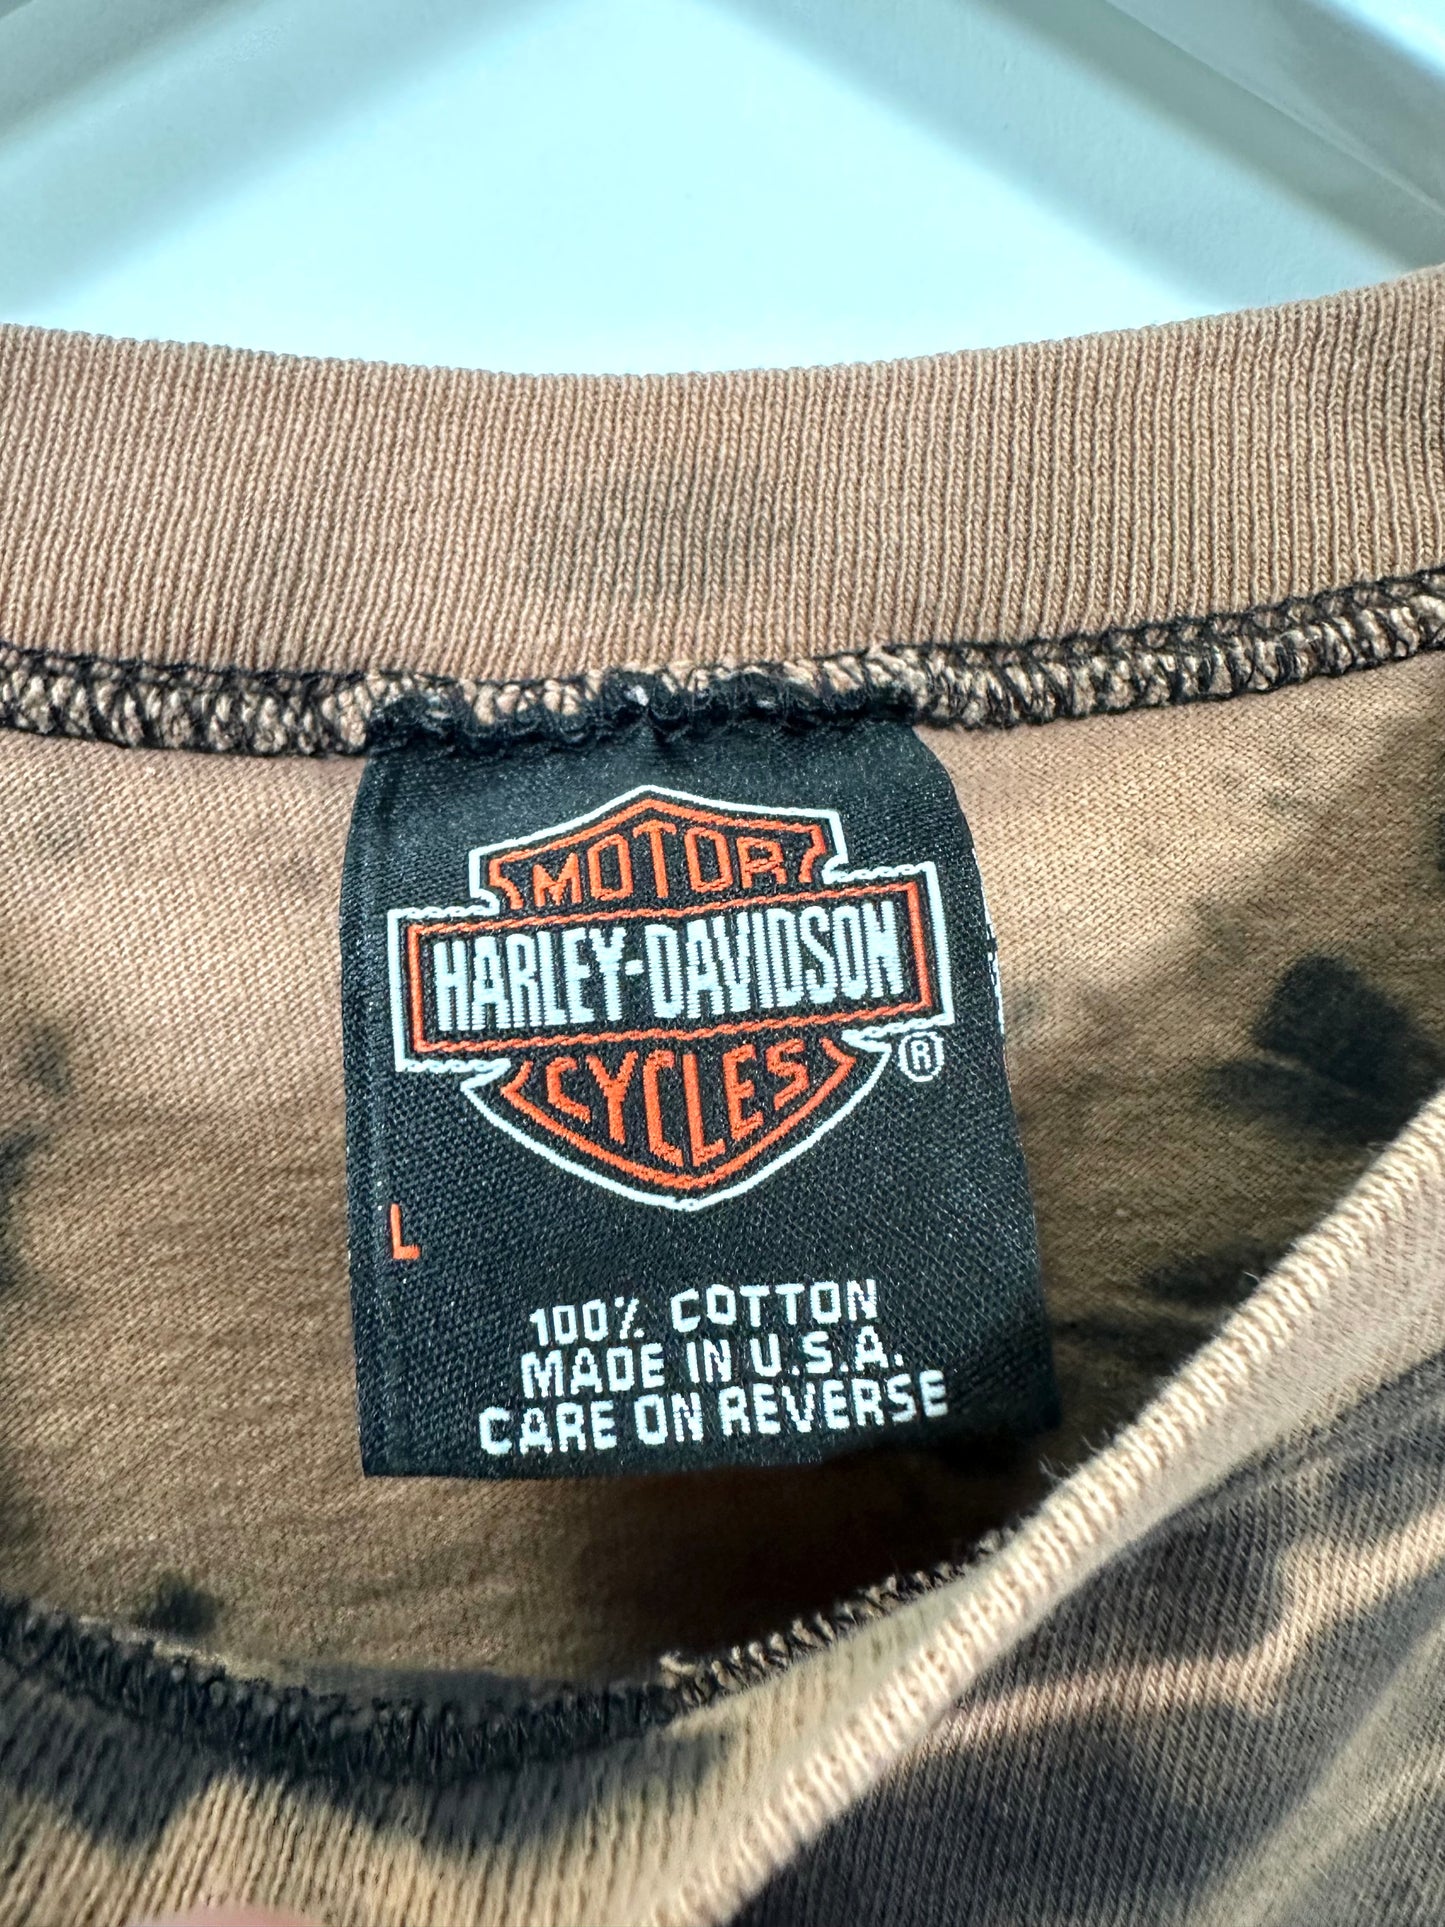 Harley Davidson Tank Top - M